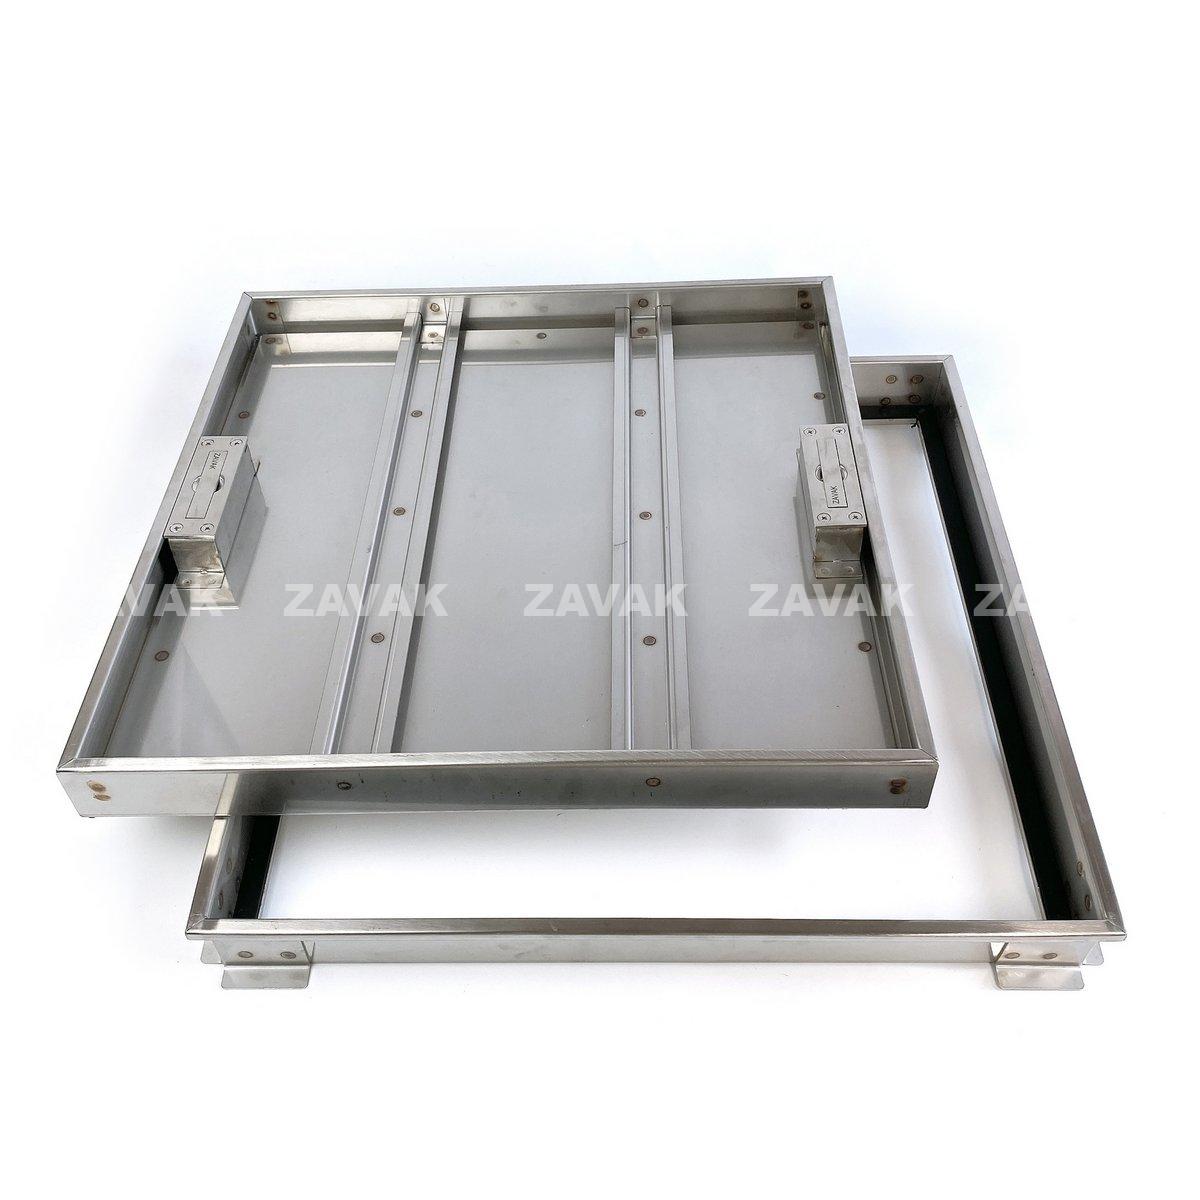 Nắp bể nước ngầm Zavak MHI-50 dùng trong nhà, KT50x50cm, lát gạch dày 2cm, chịu tải xe máy, inox 304